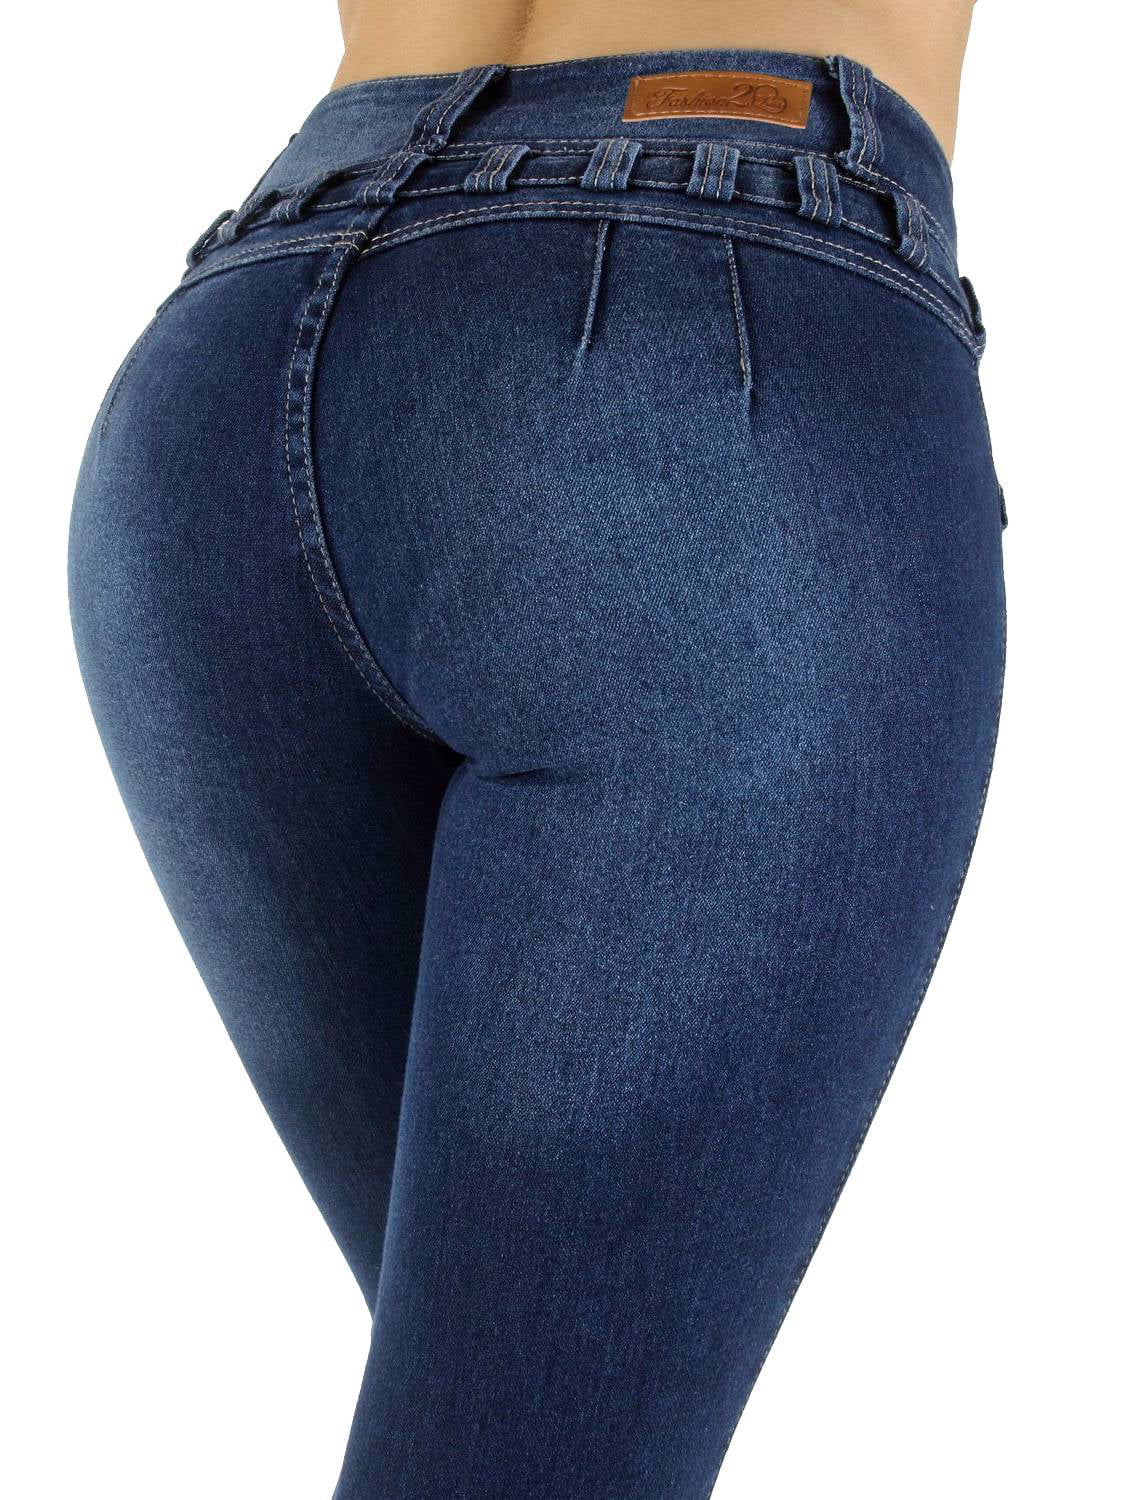 no back pocket skinny jeans